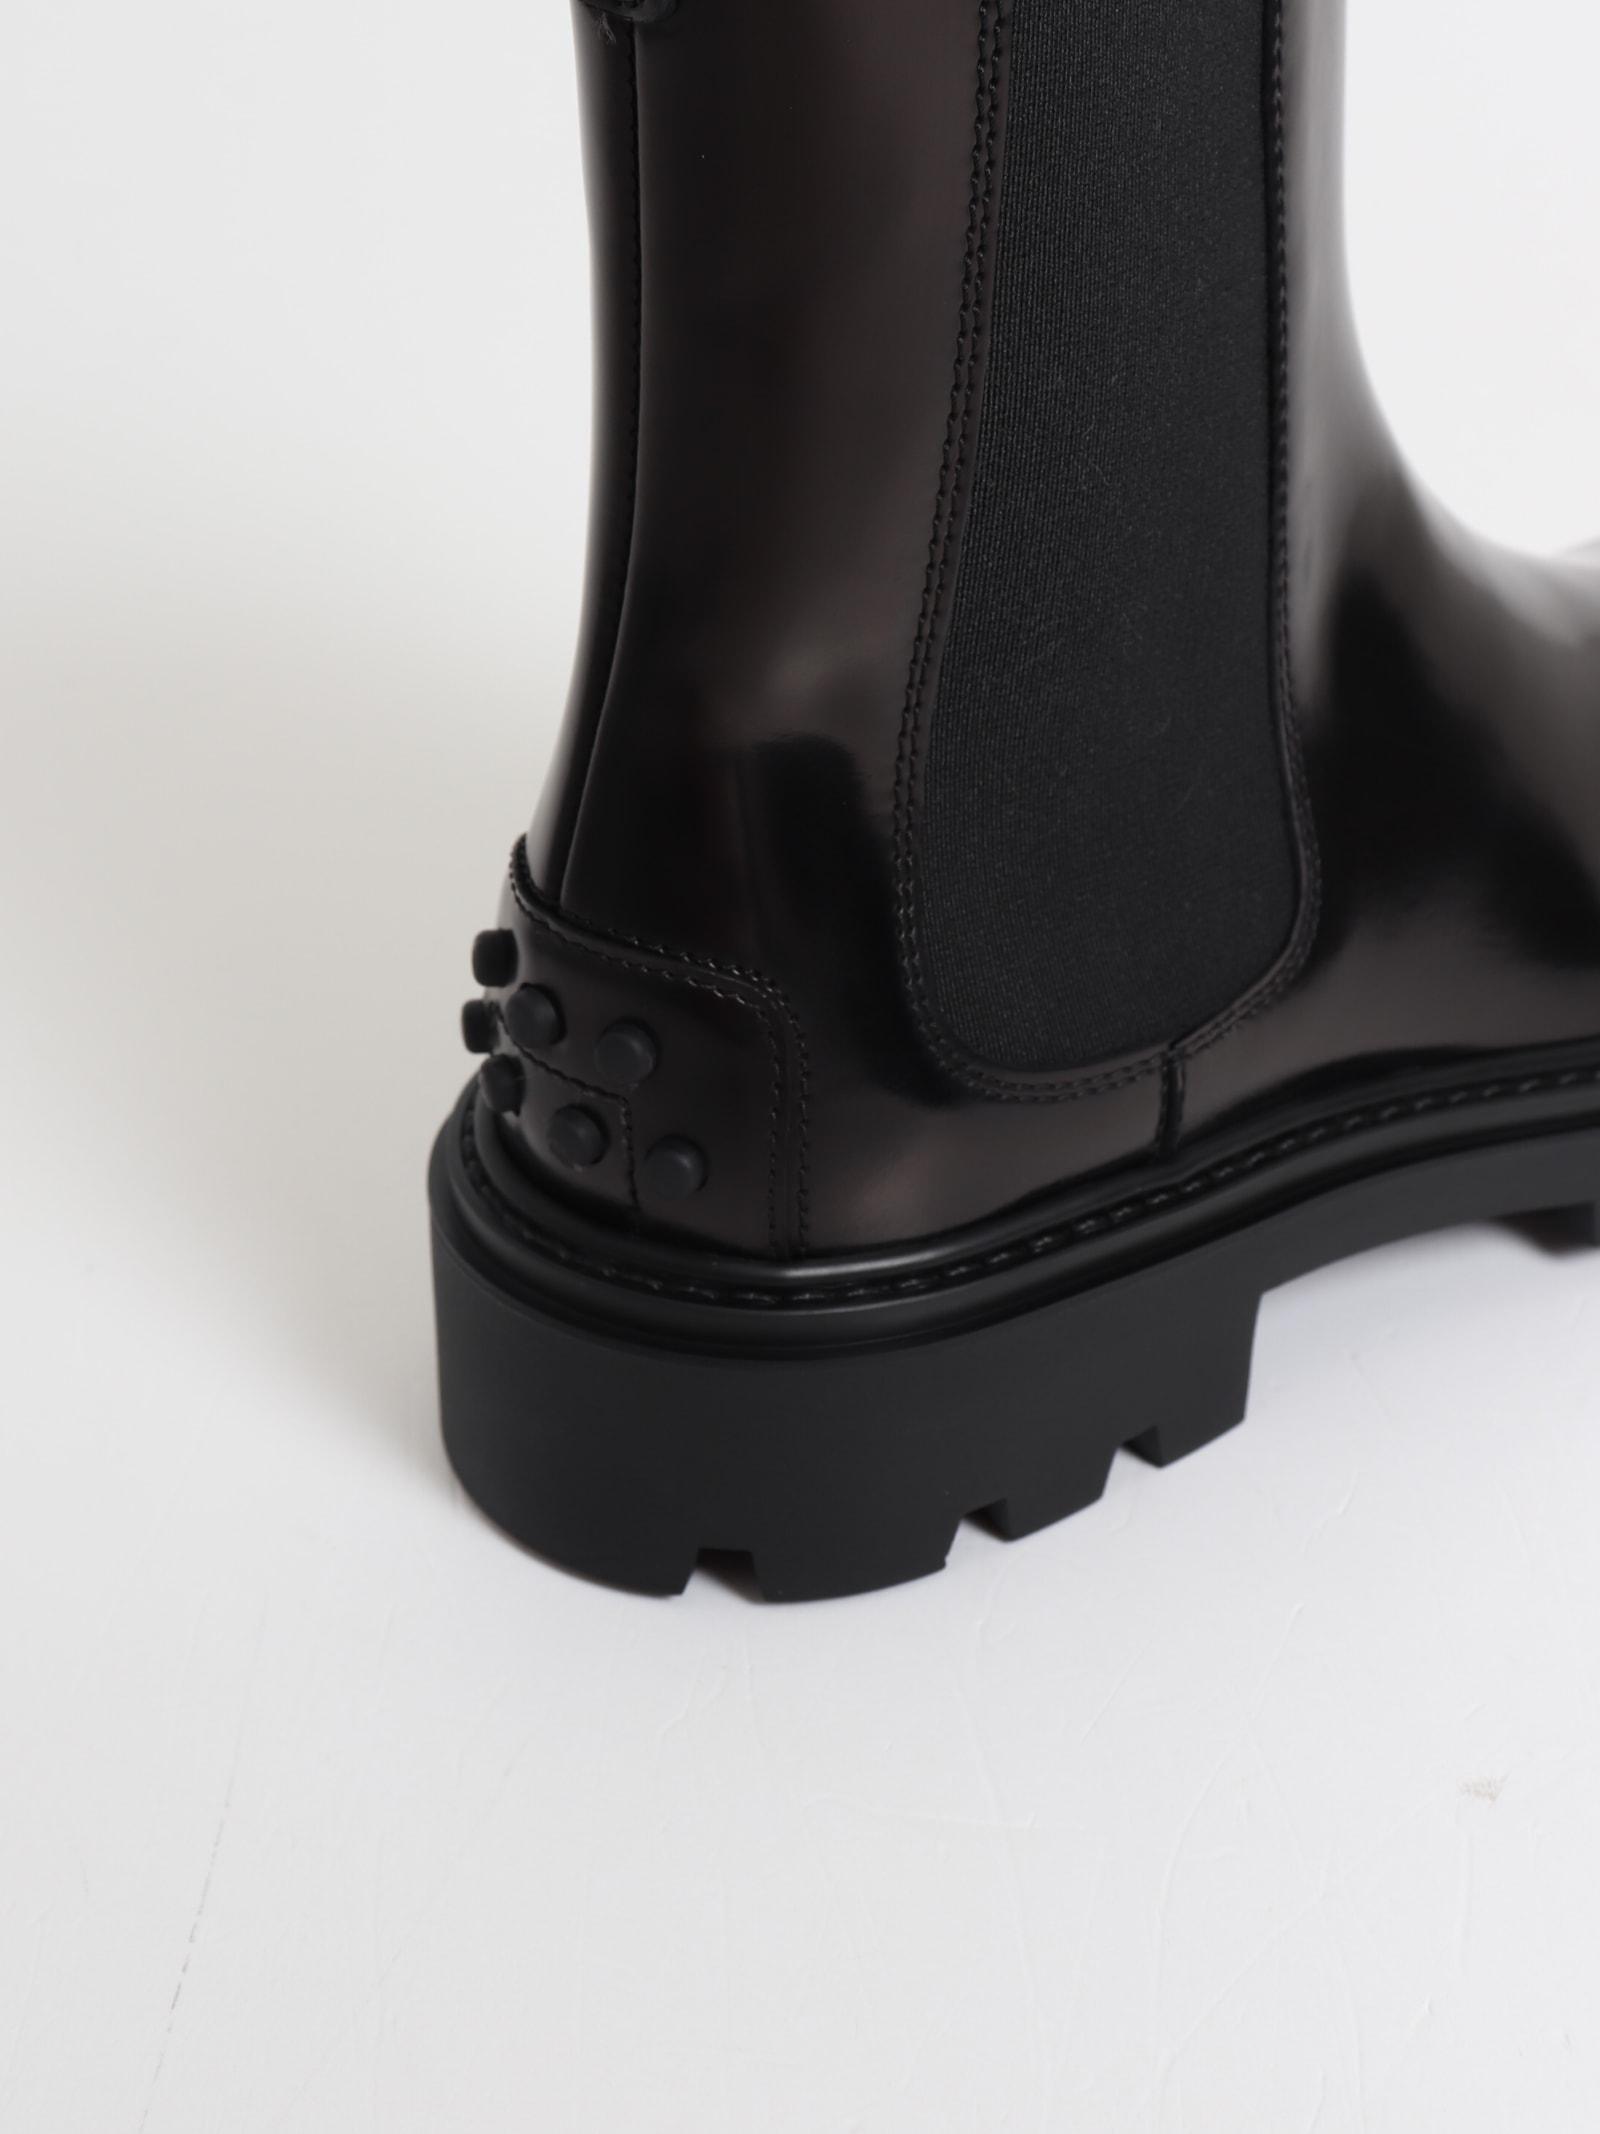 30cm/11.8 pouces outil durable souleve de chaussure argent TOOGOO corne a chaussures en acier inoxydable extra-long 